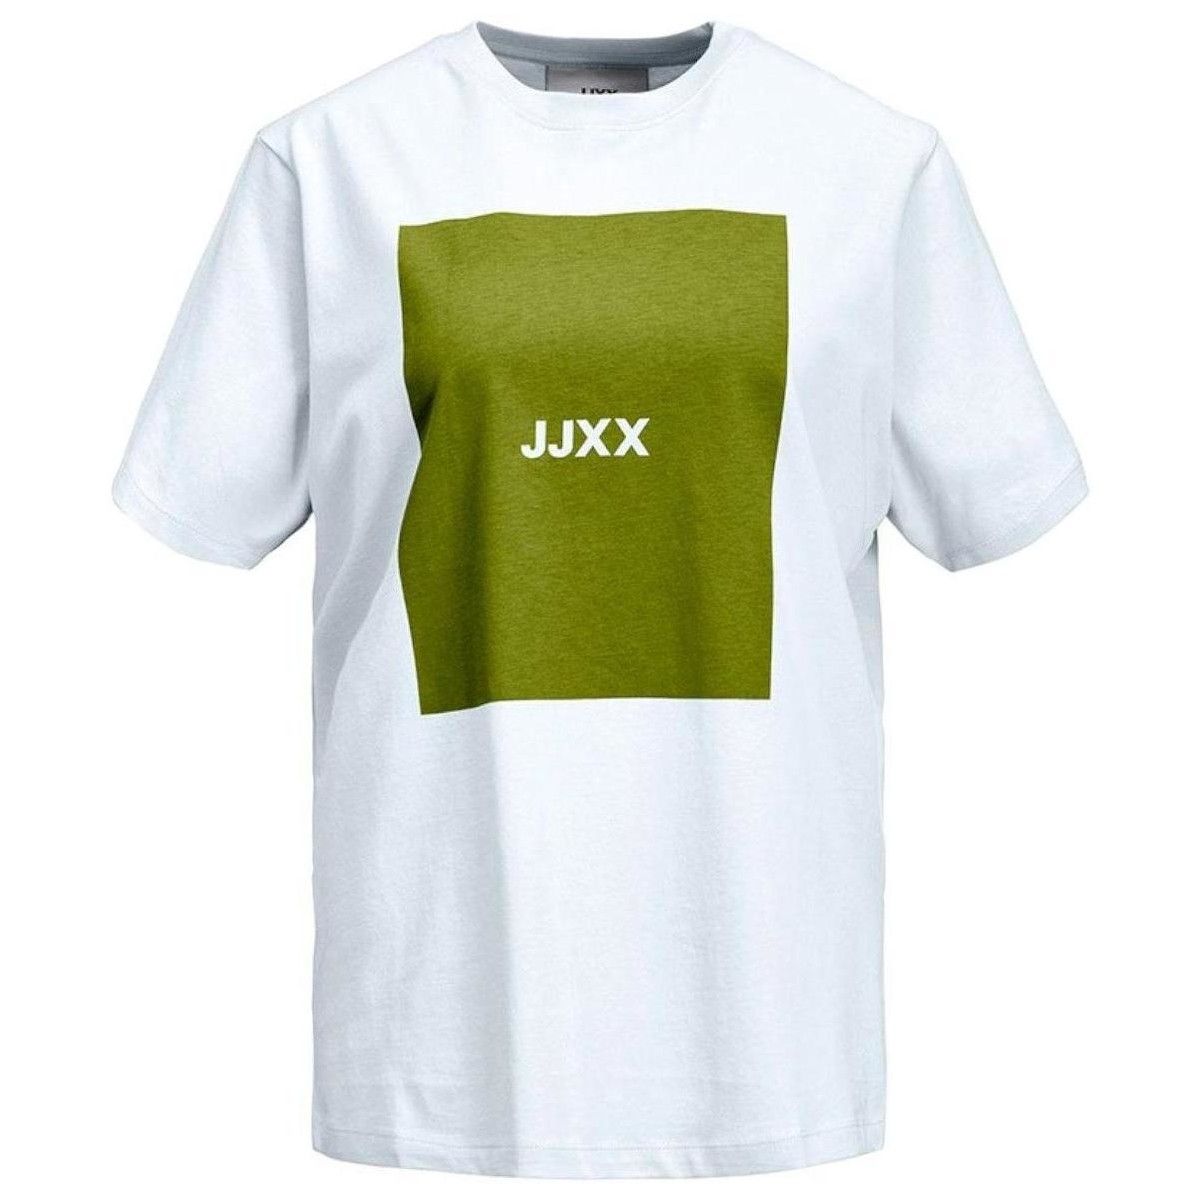 Textil Ženy Trička s krátkým rukávem Jjxx  Bílá